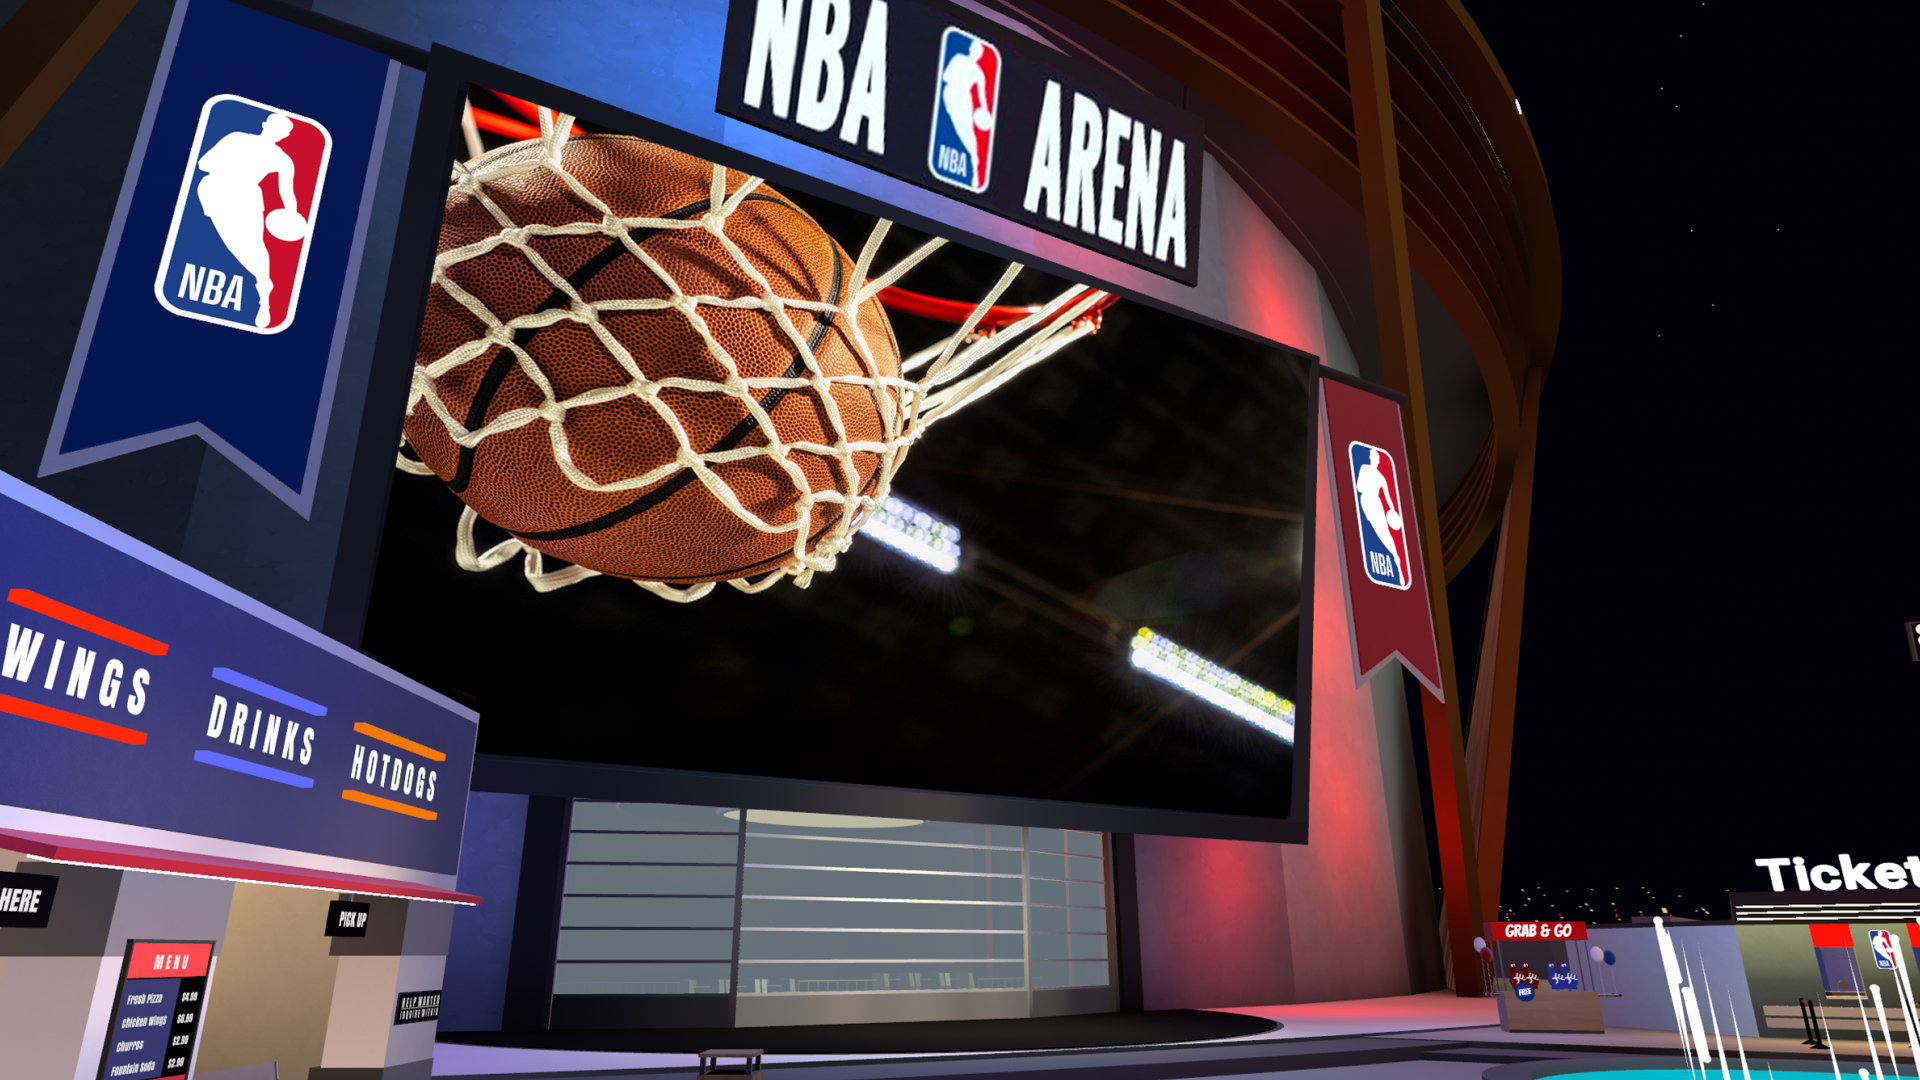 Un grand écran diffusant un match de basket, dans un stade NBA virtuel avec un stand de restauration et une billetterie